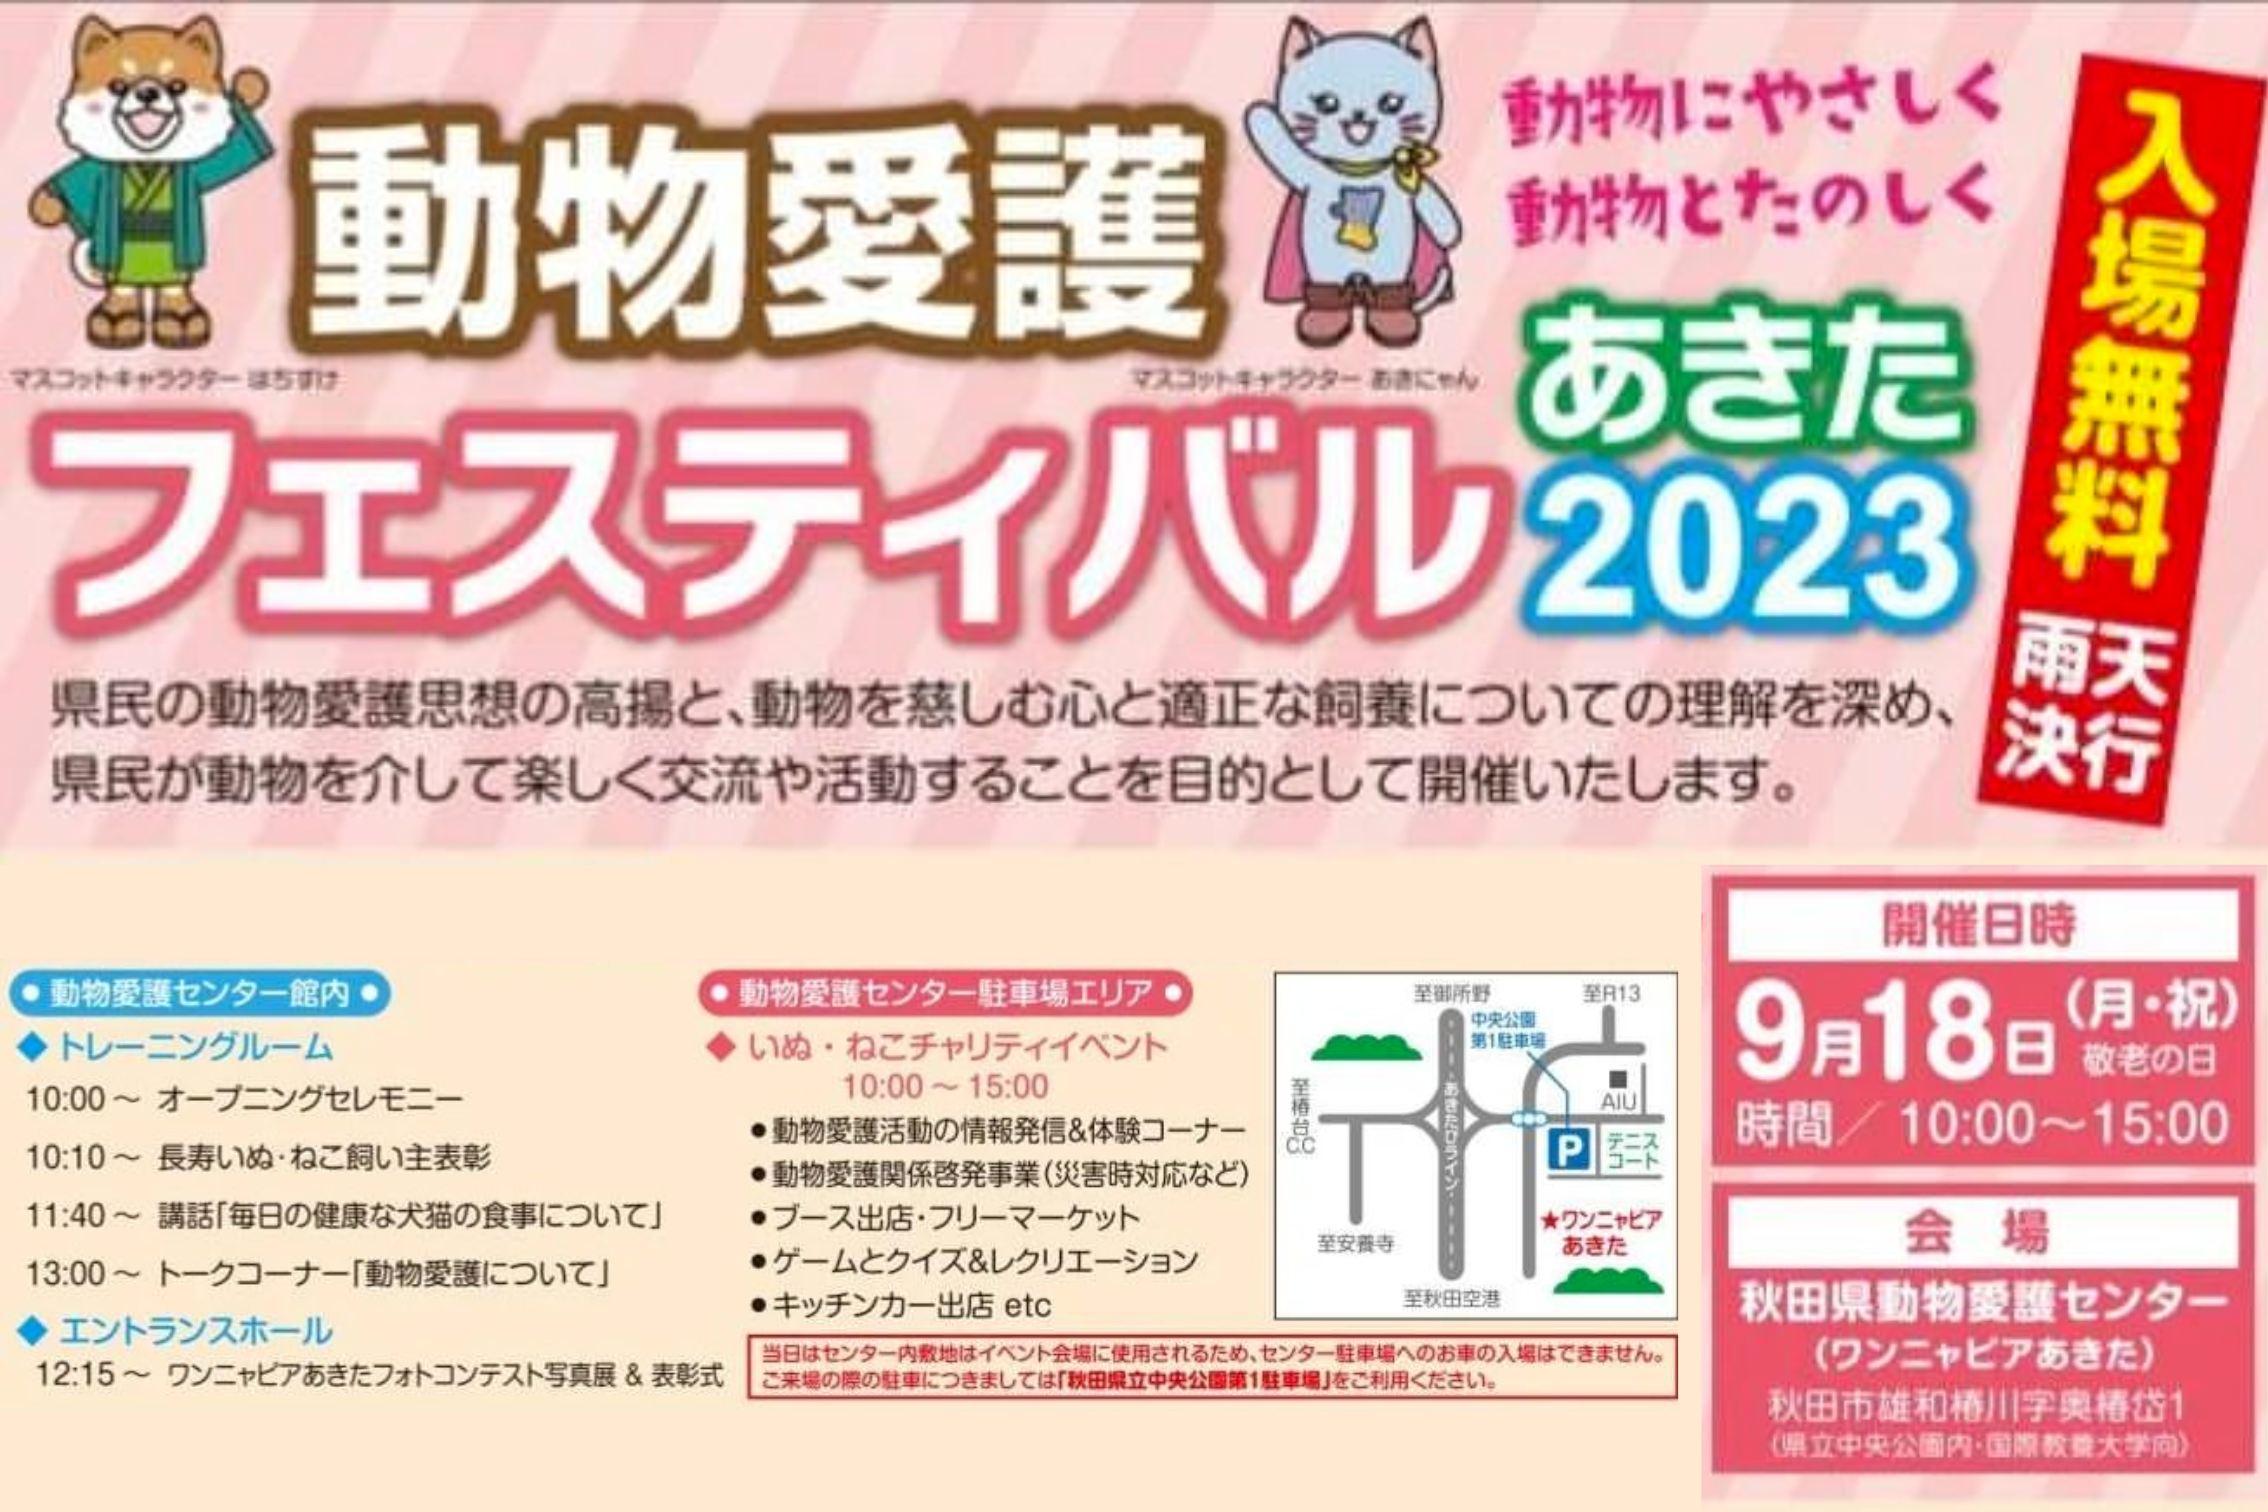 【秋田県】動物愛護フェスティバル あきた 2023